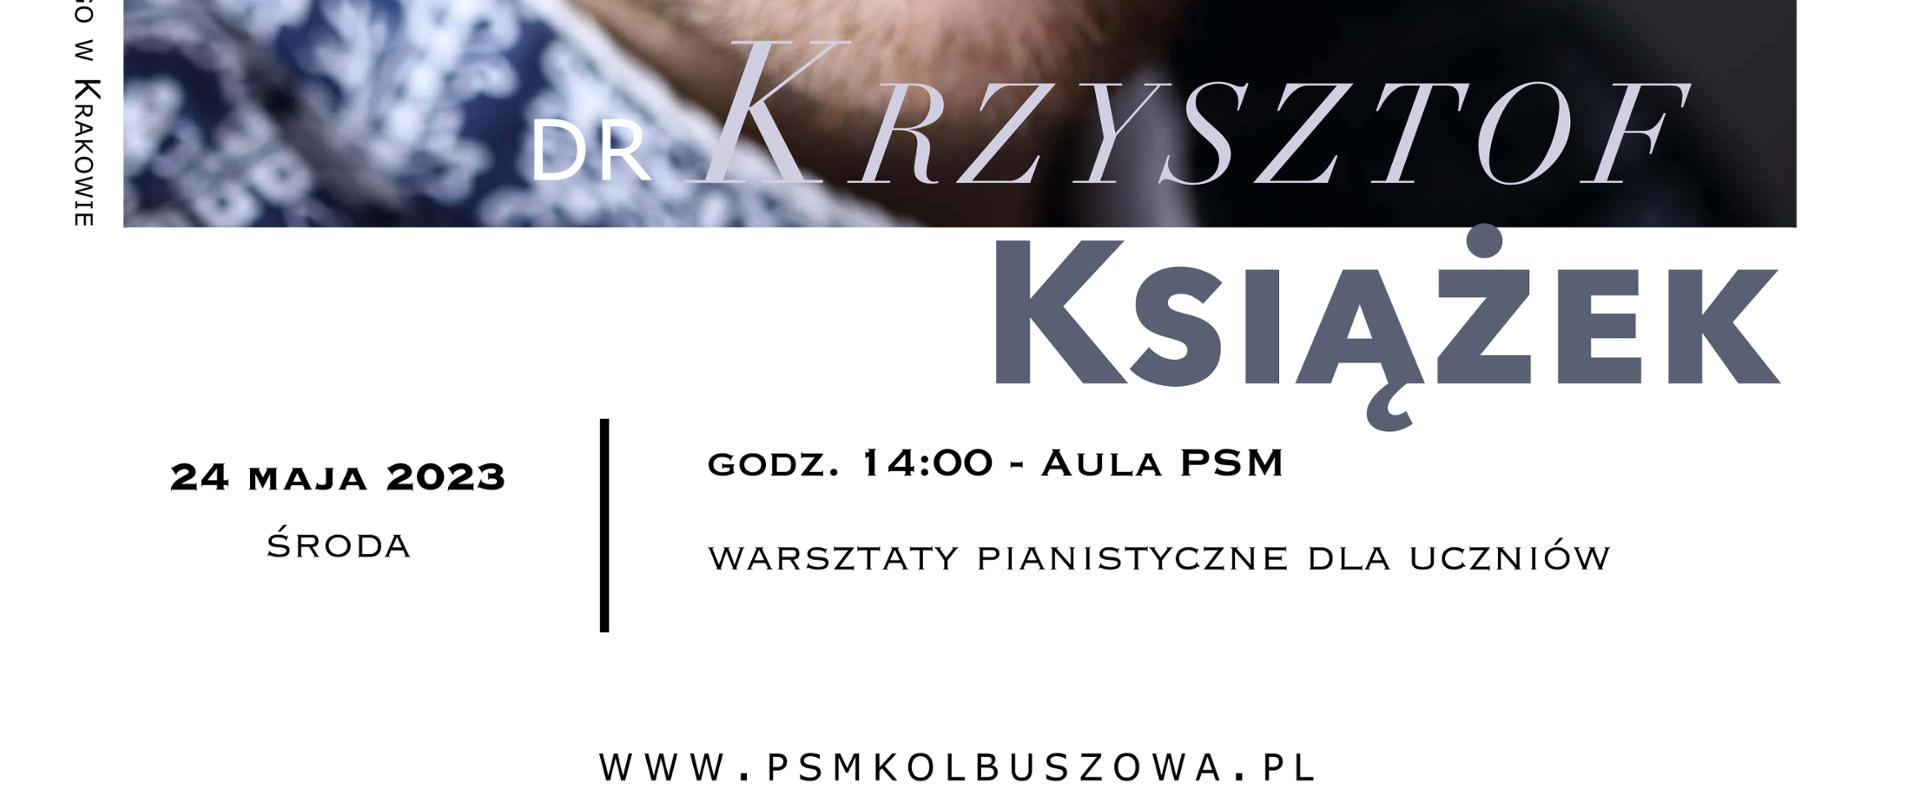 Plakat na białym tle przedstawia wizerunek artysty Pana dr Krzysztofa Książka oraz informacje na temat warsztatów pianistycznych w kolorze czarnym